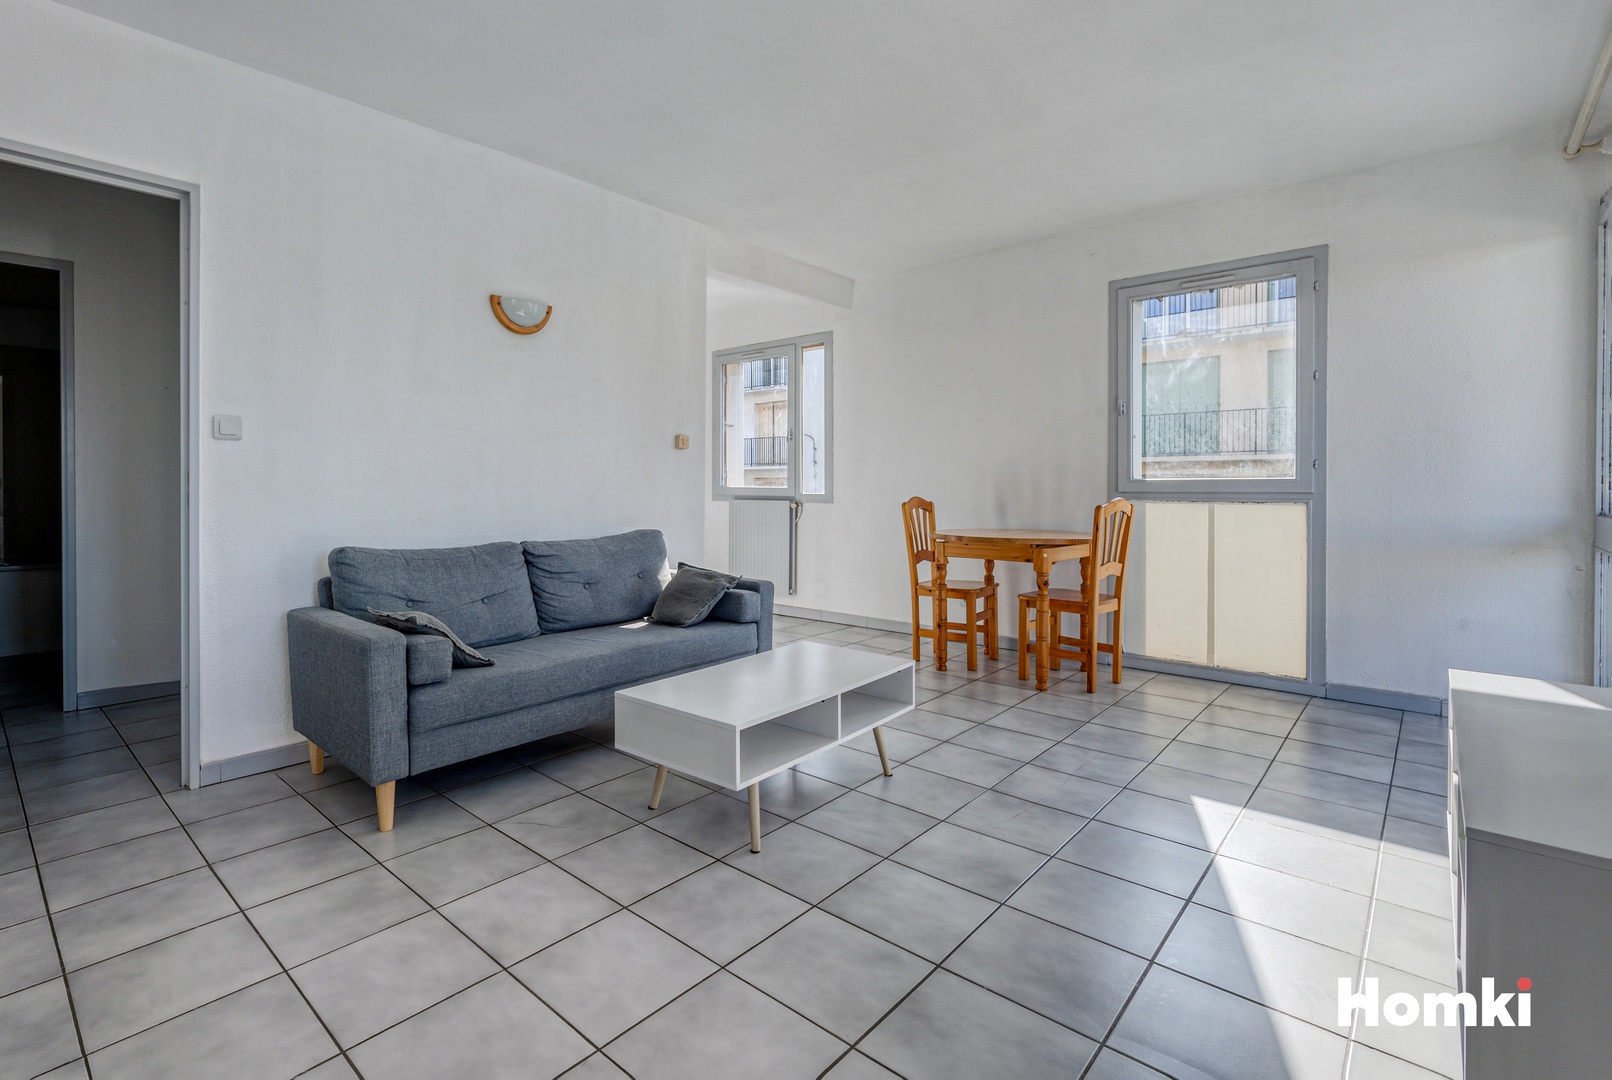 Homki - Vente Appartement  de 45.0 m² à Perpignan 66000